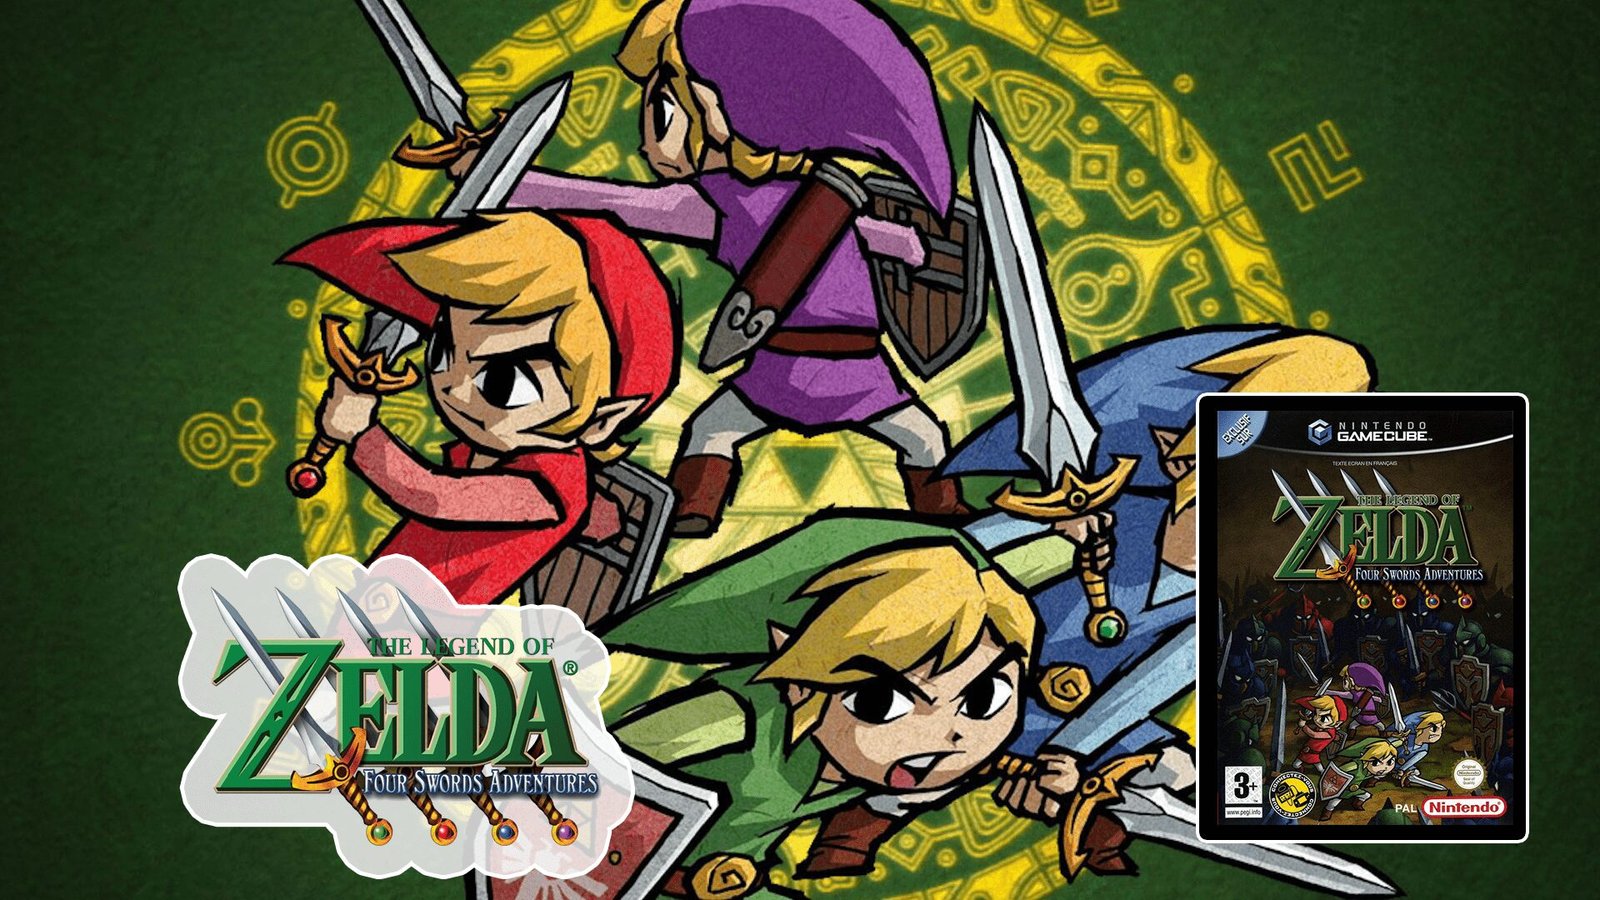 The Legend of Zelda - Four Sword Adventures